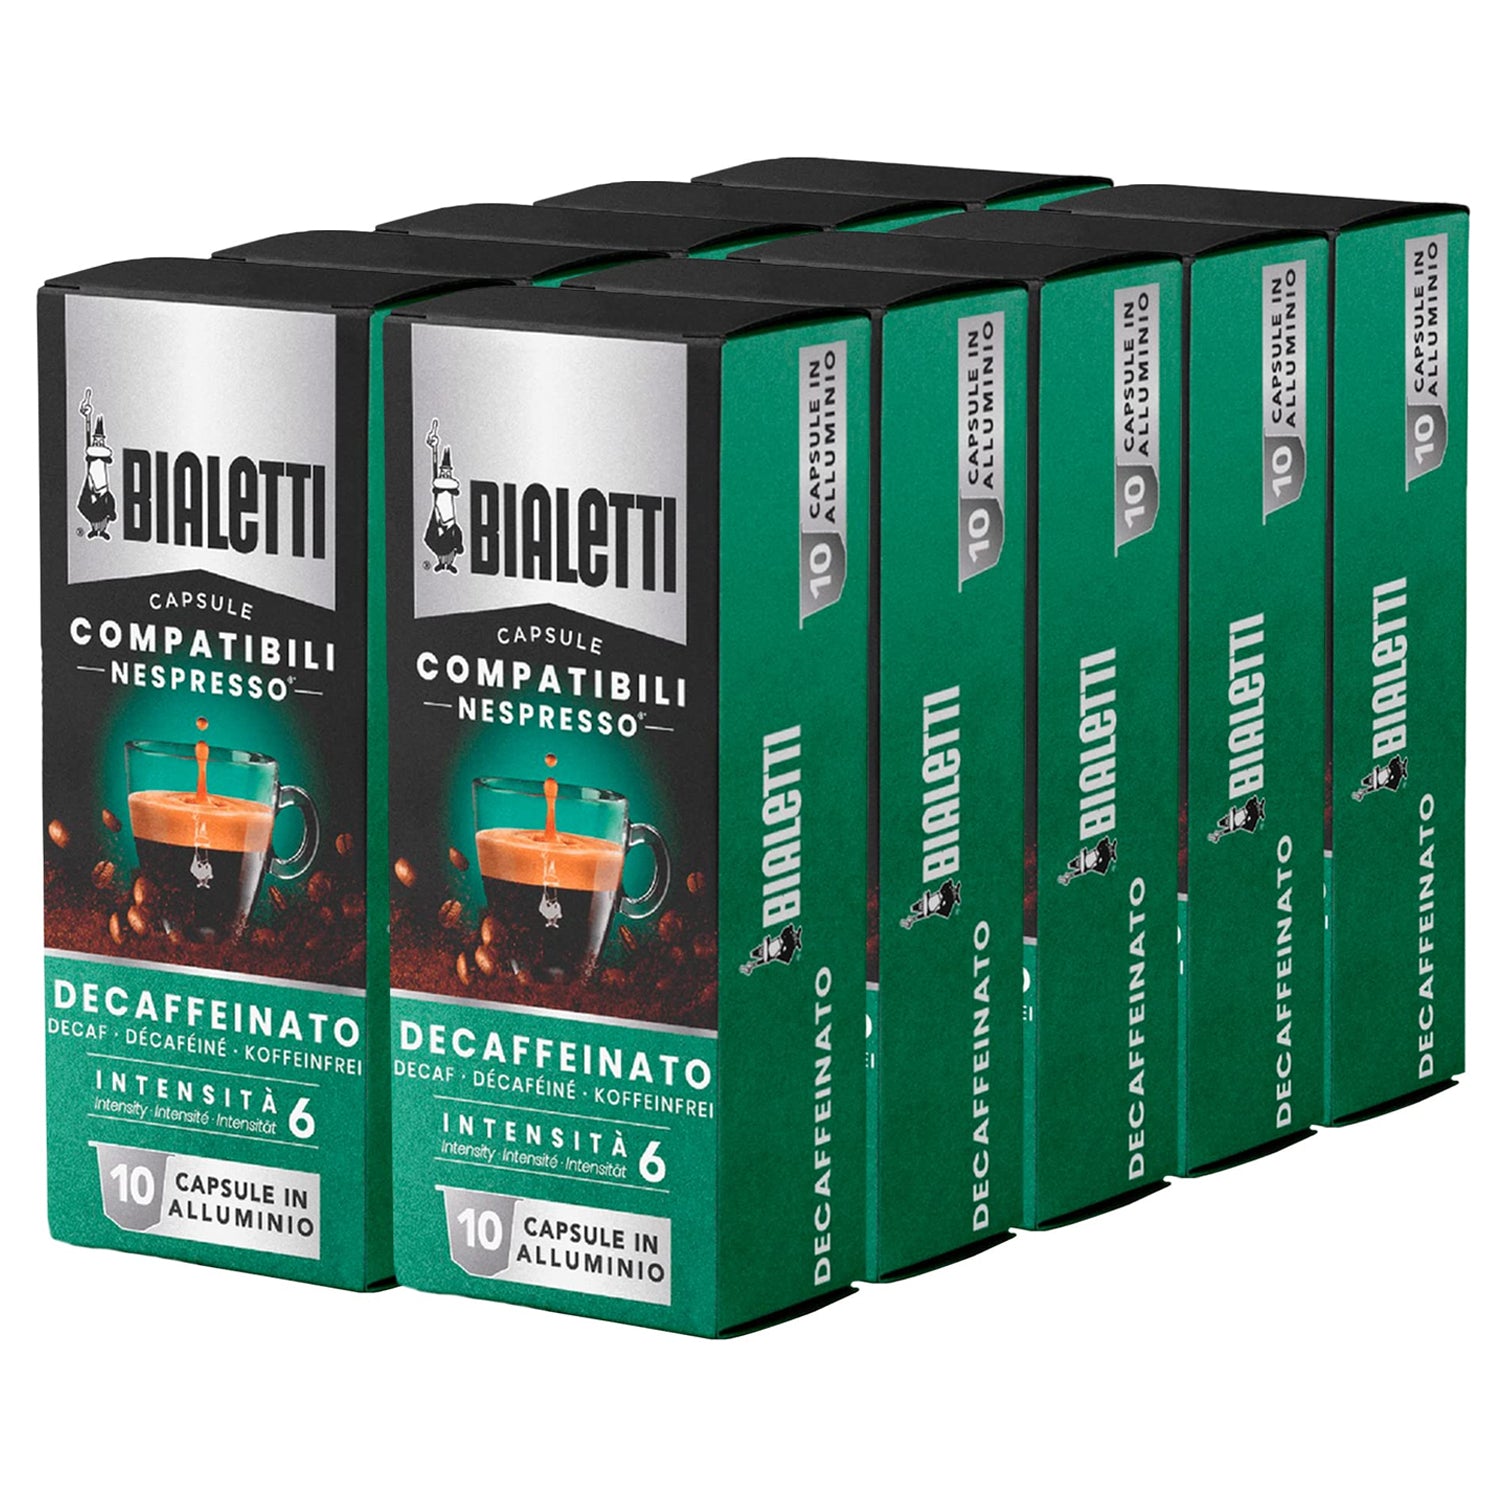 Capsule Ristretto - compatible Nespresso - Green coffee Monaco